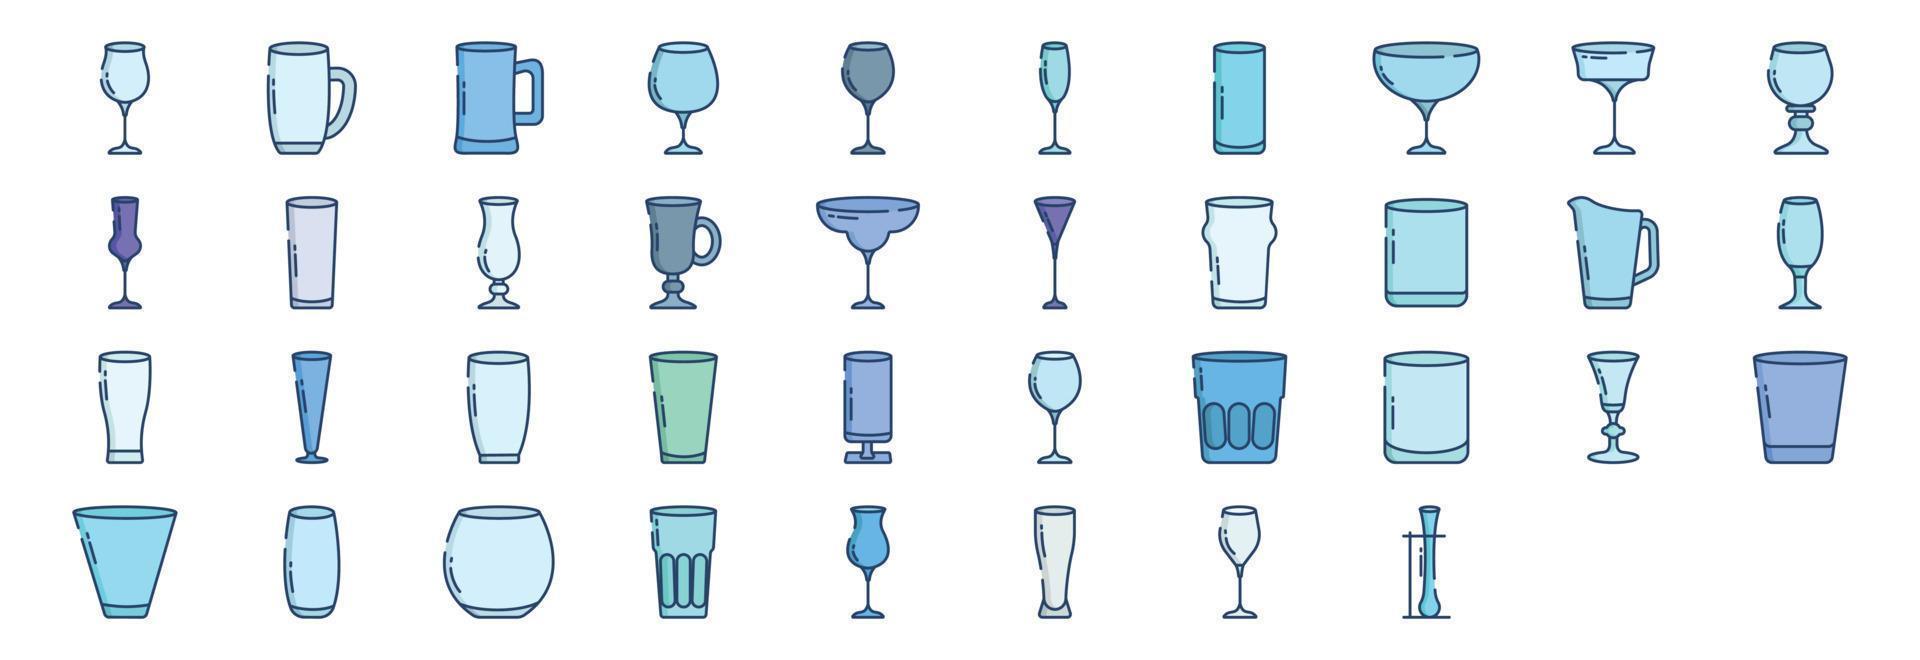 verzameling van pictogrammen verwant naar bar bril, inclusief pictogrammen Leuk vinden glas, fizzio glas en meer. vector illustraties, pixel perfect reeks